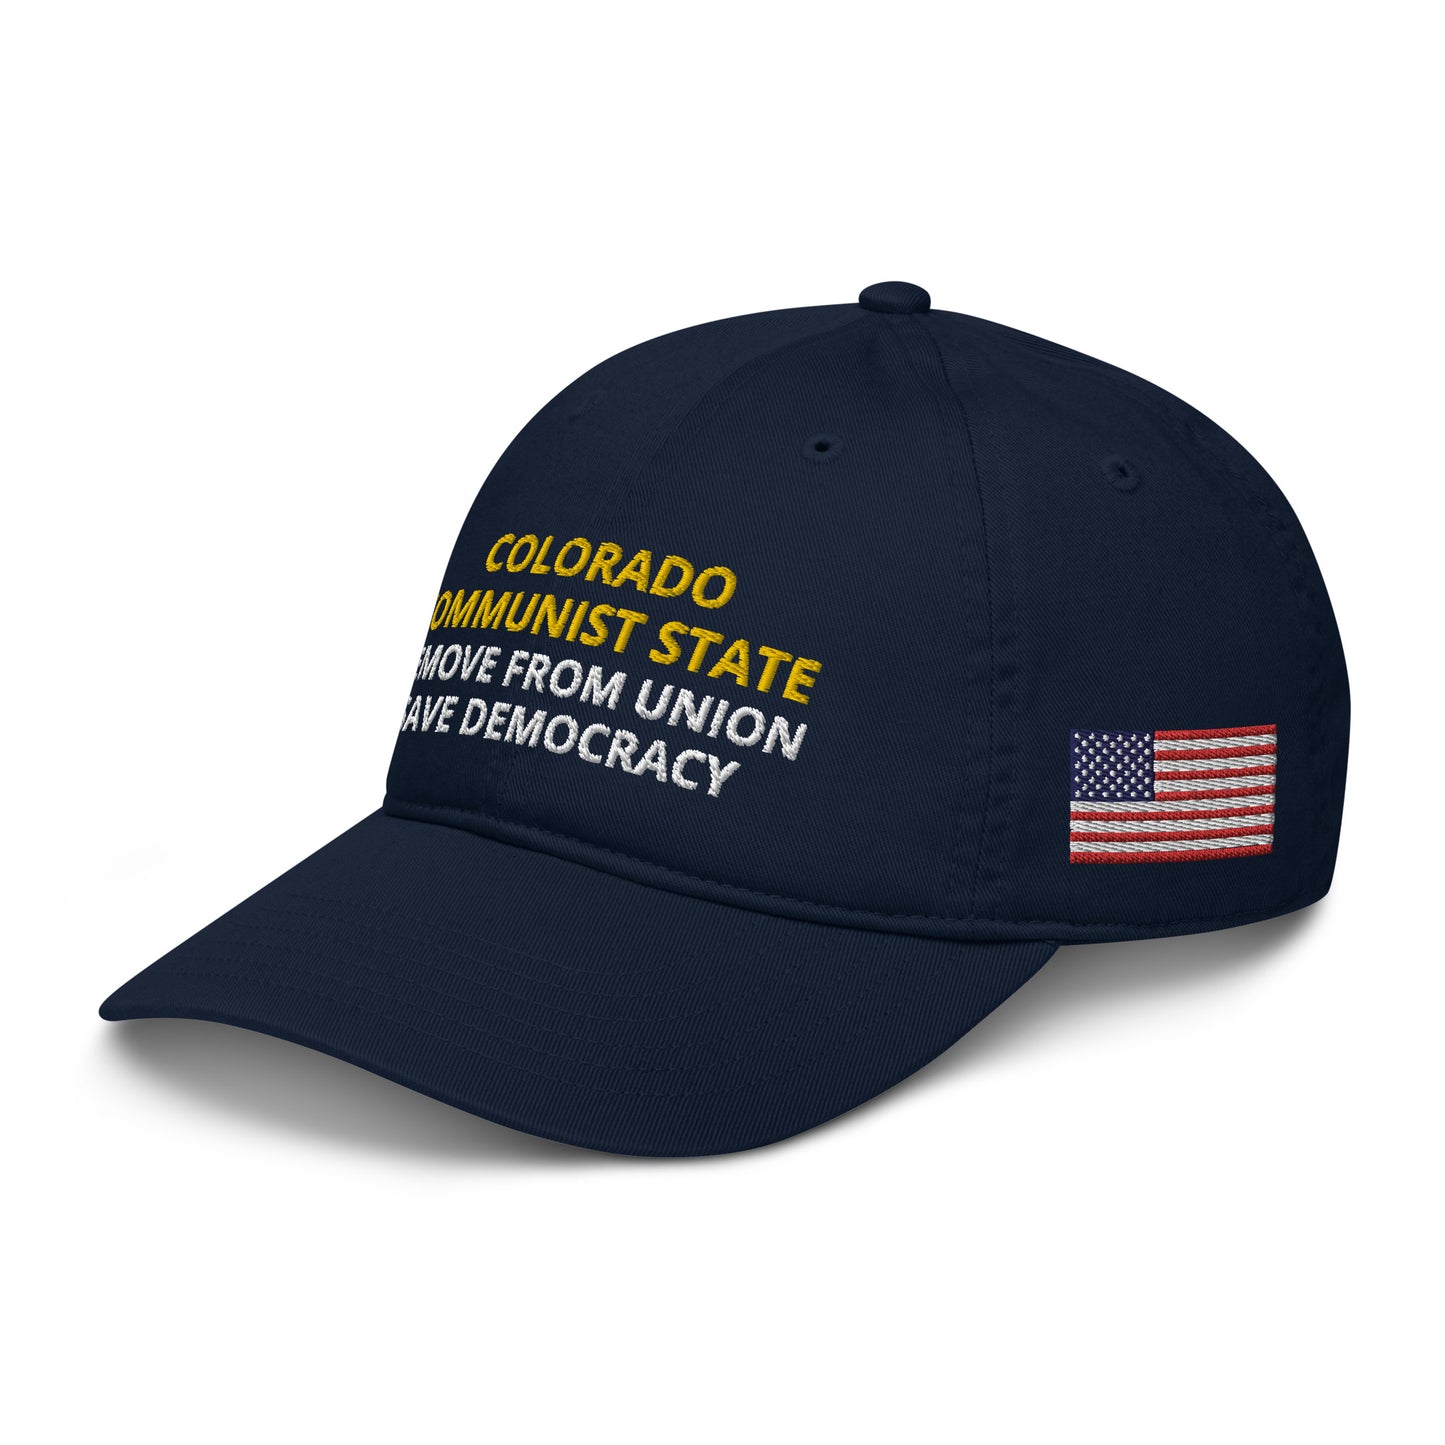 Colorado Communist State dad hat